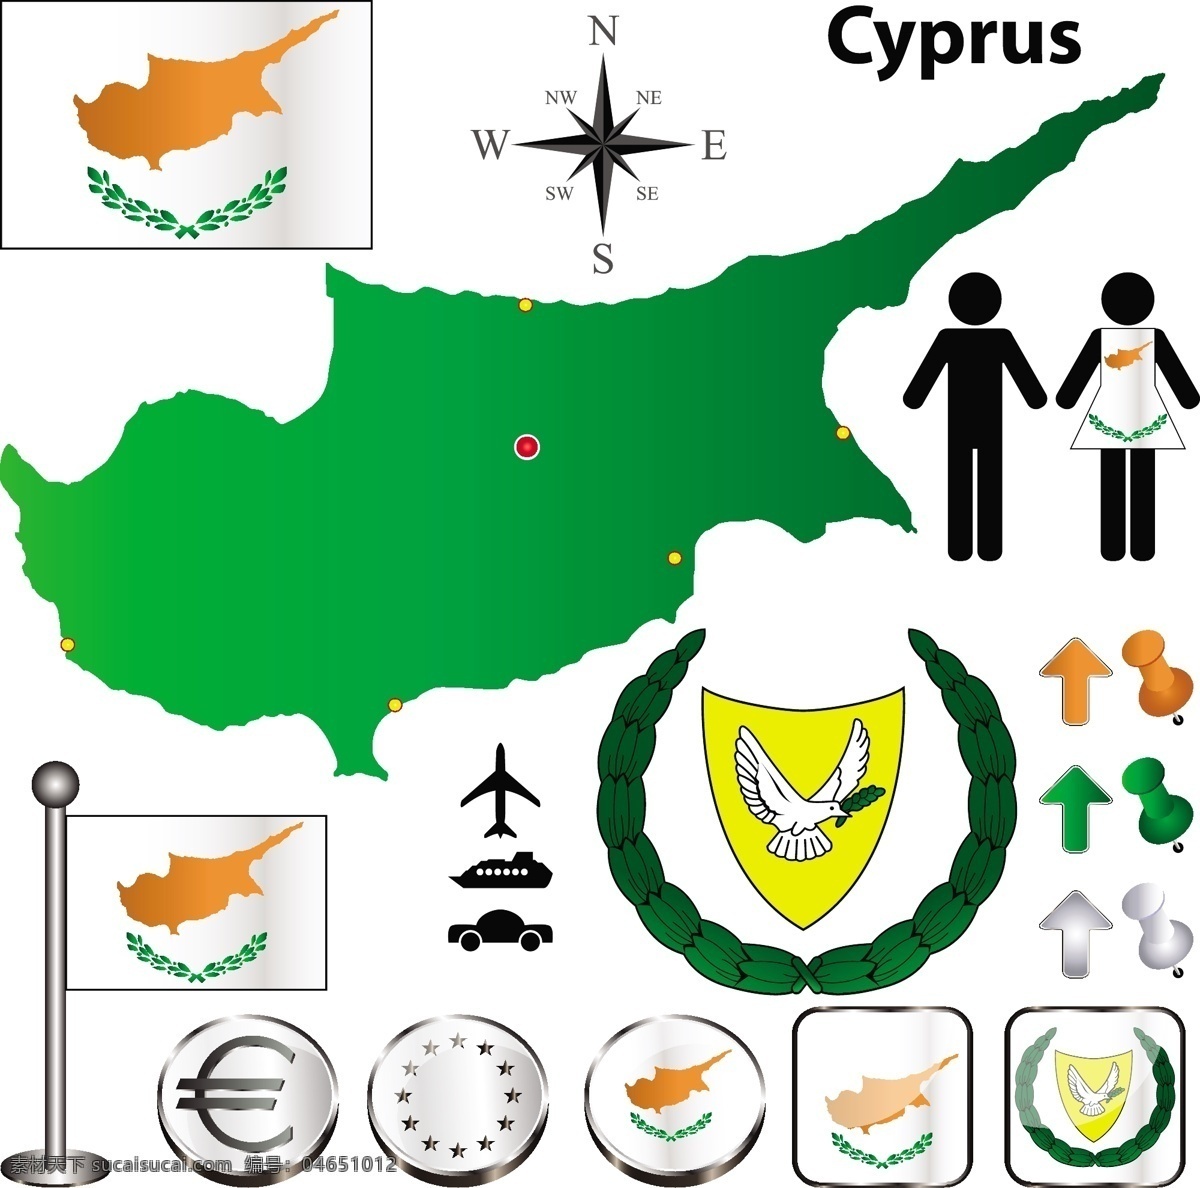 塞浦路斯 标识标志图标 国徽 国家 国旗 小图标 矢量 模板下载 psd源文件